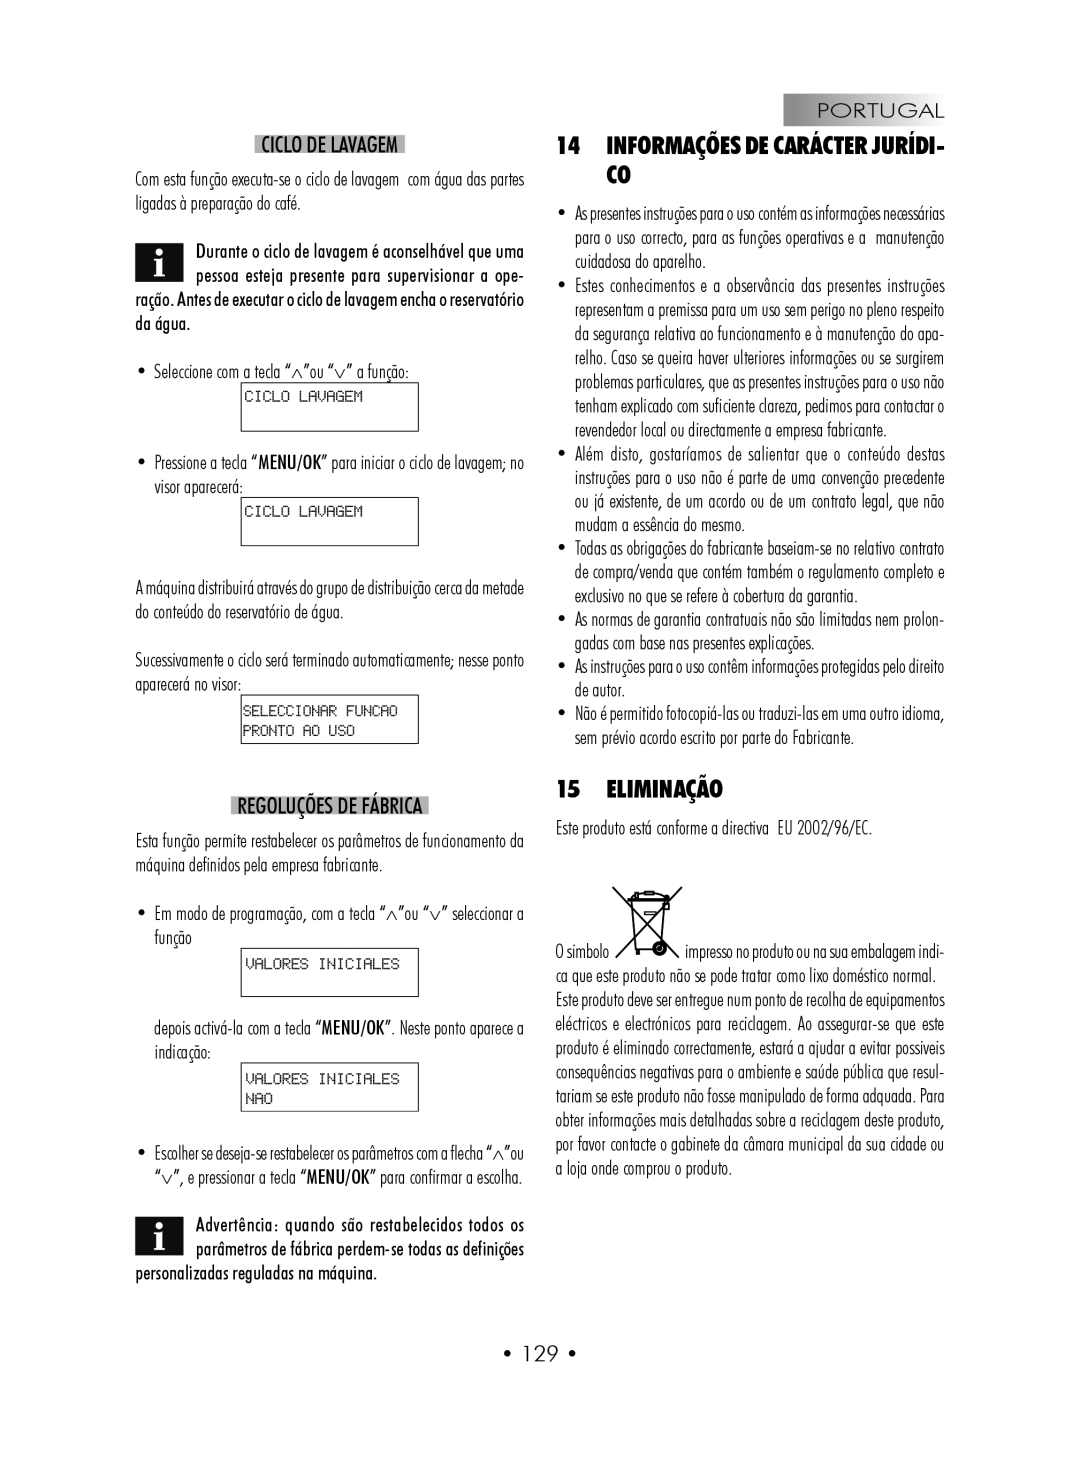 Gaggia SUP027YDR manual 14INFORMAÇÕES DE CARÁCTER JURÍDI- CO, Eliminação, Ciclo De Lavagem, Regoluções De Fábrica, • 129 • 